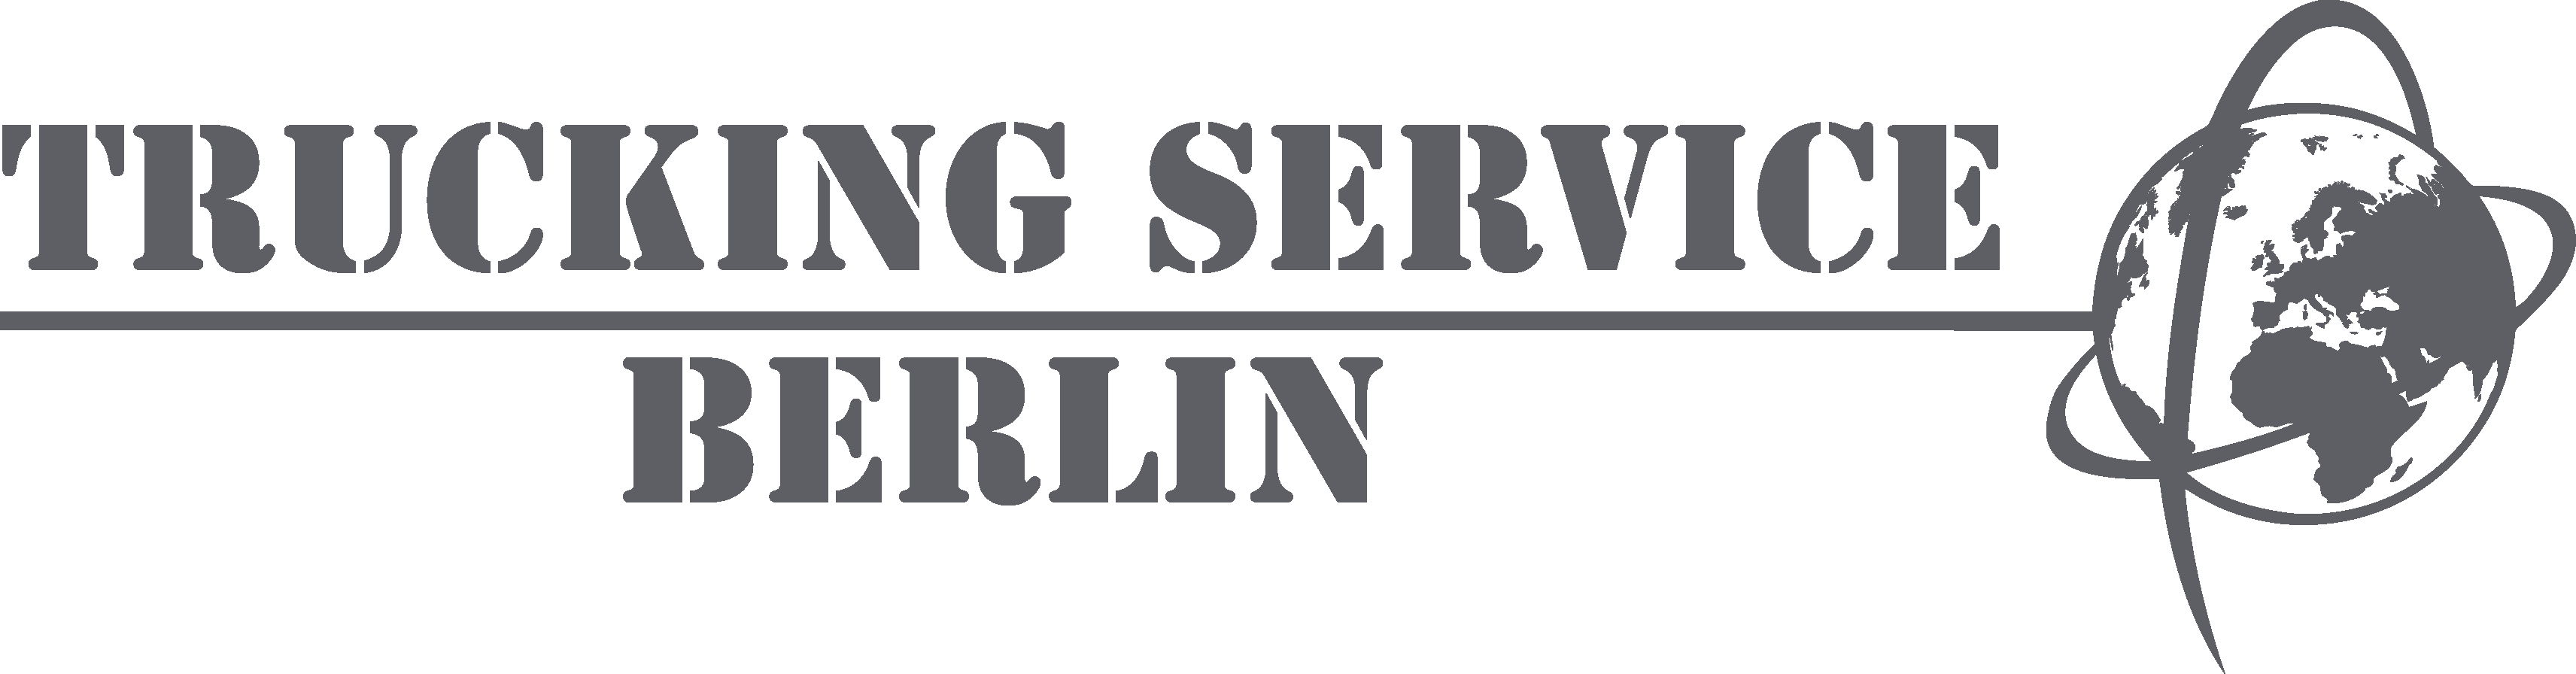 Trucking Service Berlin GmbH & Co. KG